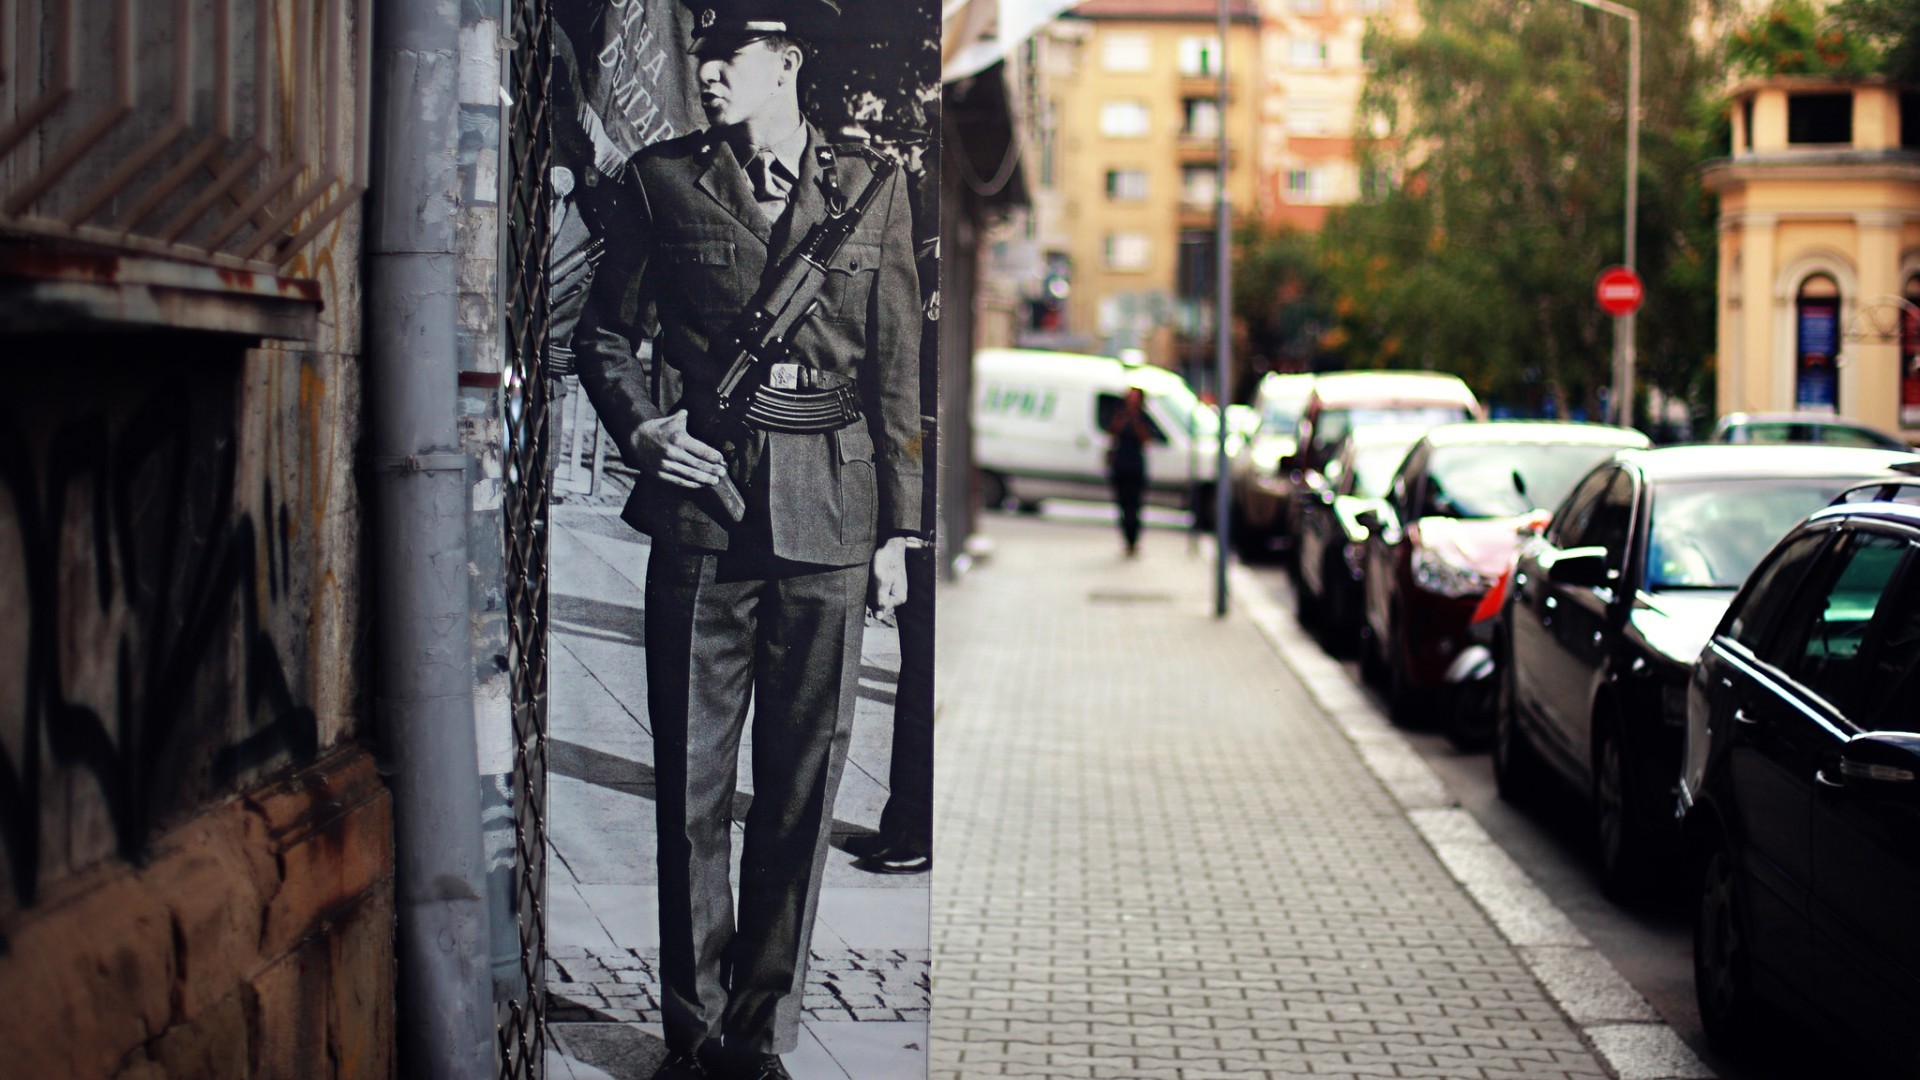 General 1920x1080 war street soldier split view city gray pavements monochrome Bulgaria